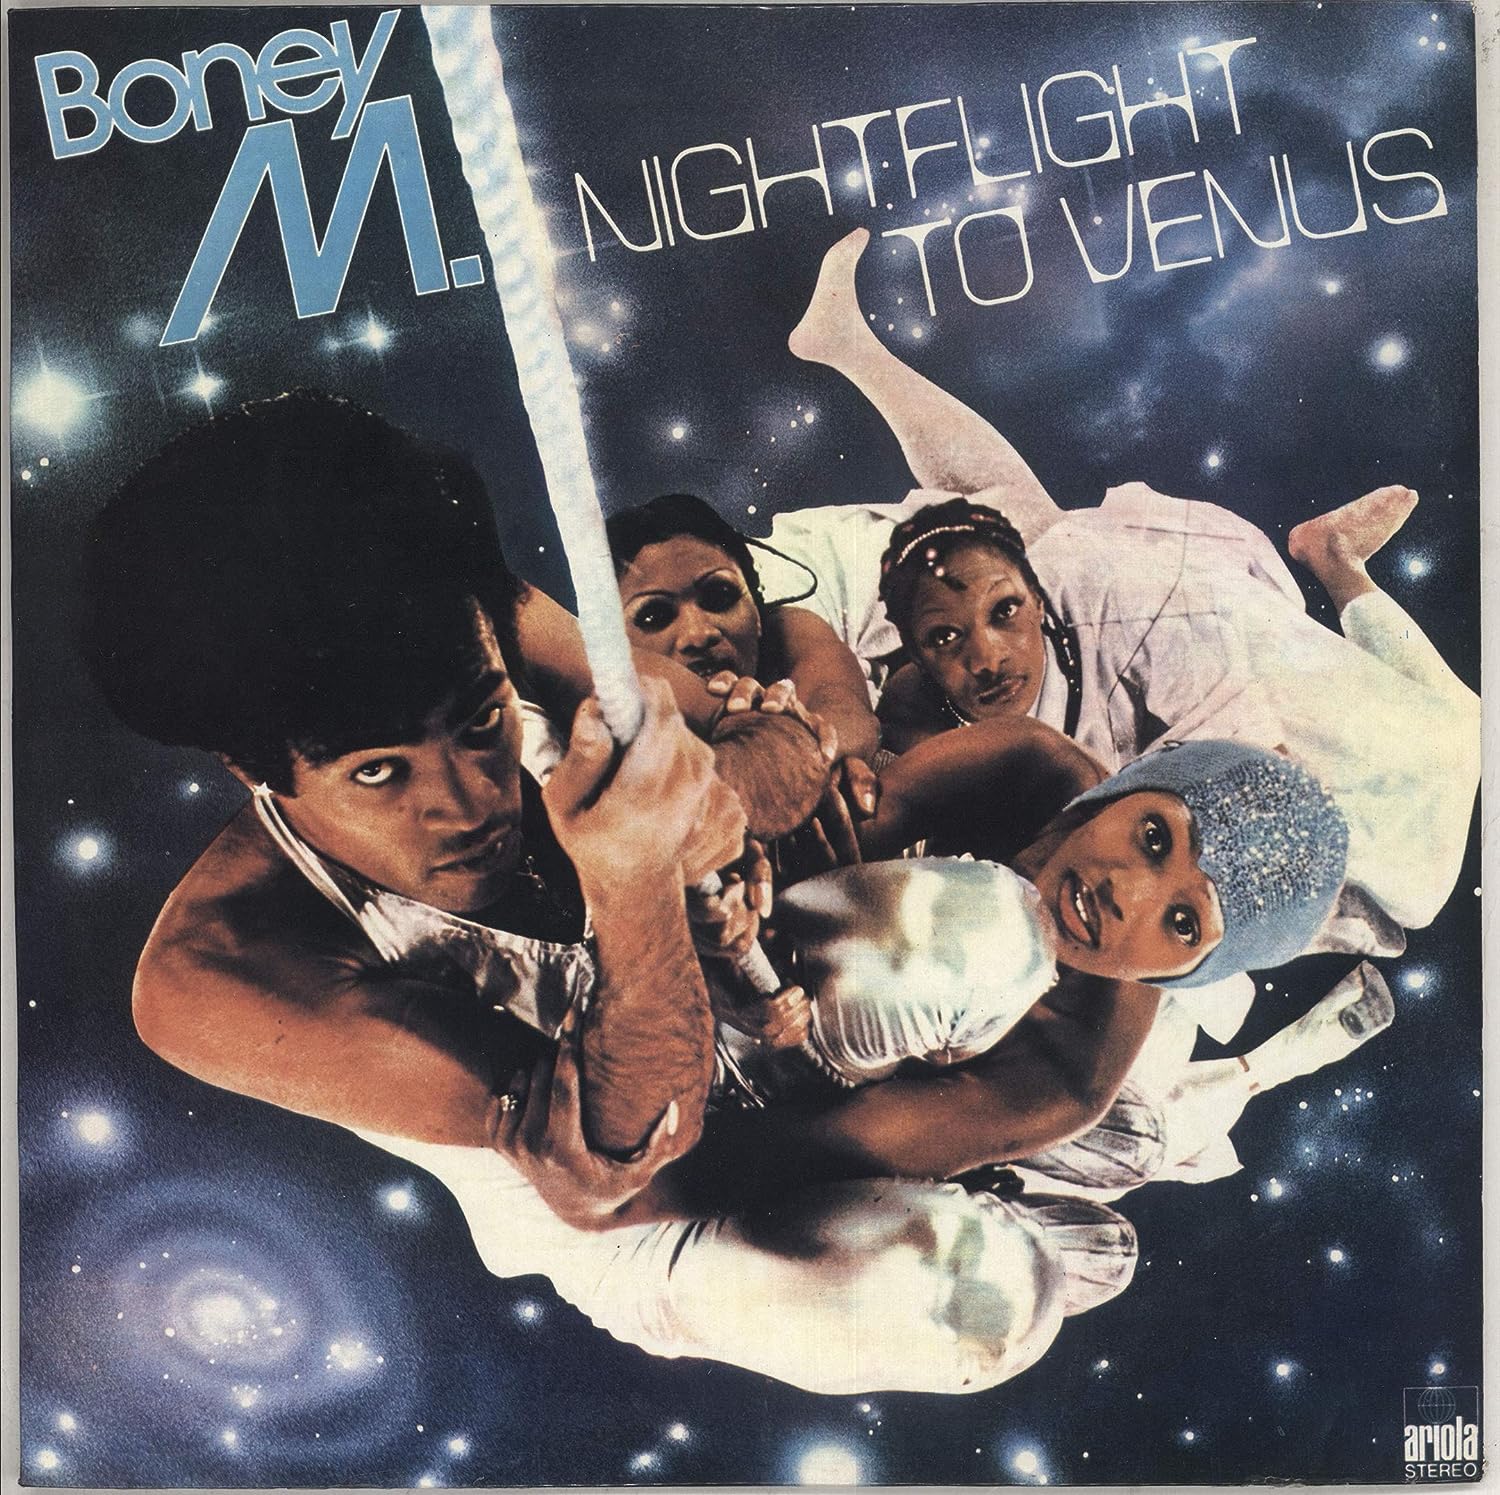 Слушать бони полет на венеру. Boney m Nightflight to Venus 1978. Бони м обложки. Обложки пластинок Boney m. Boney m cd1.